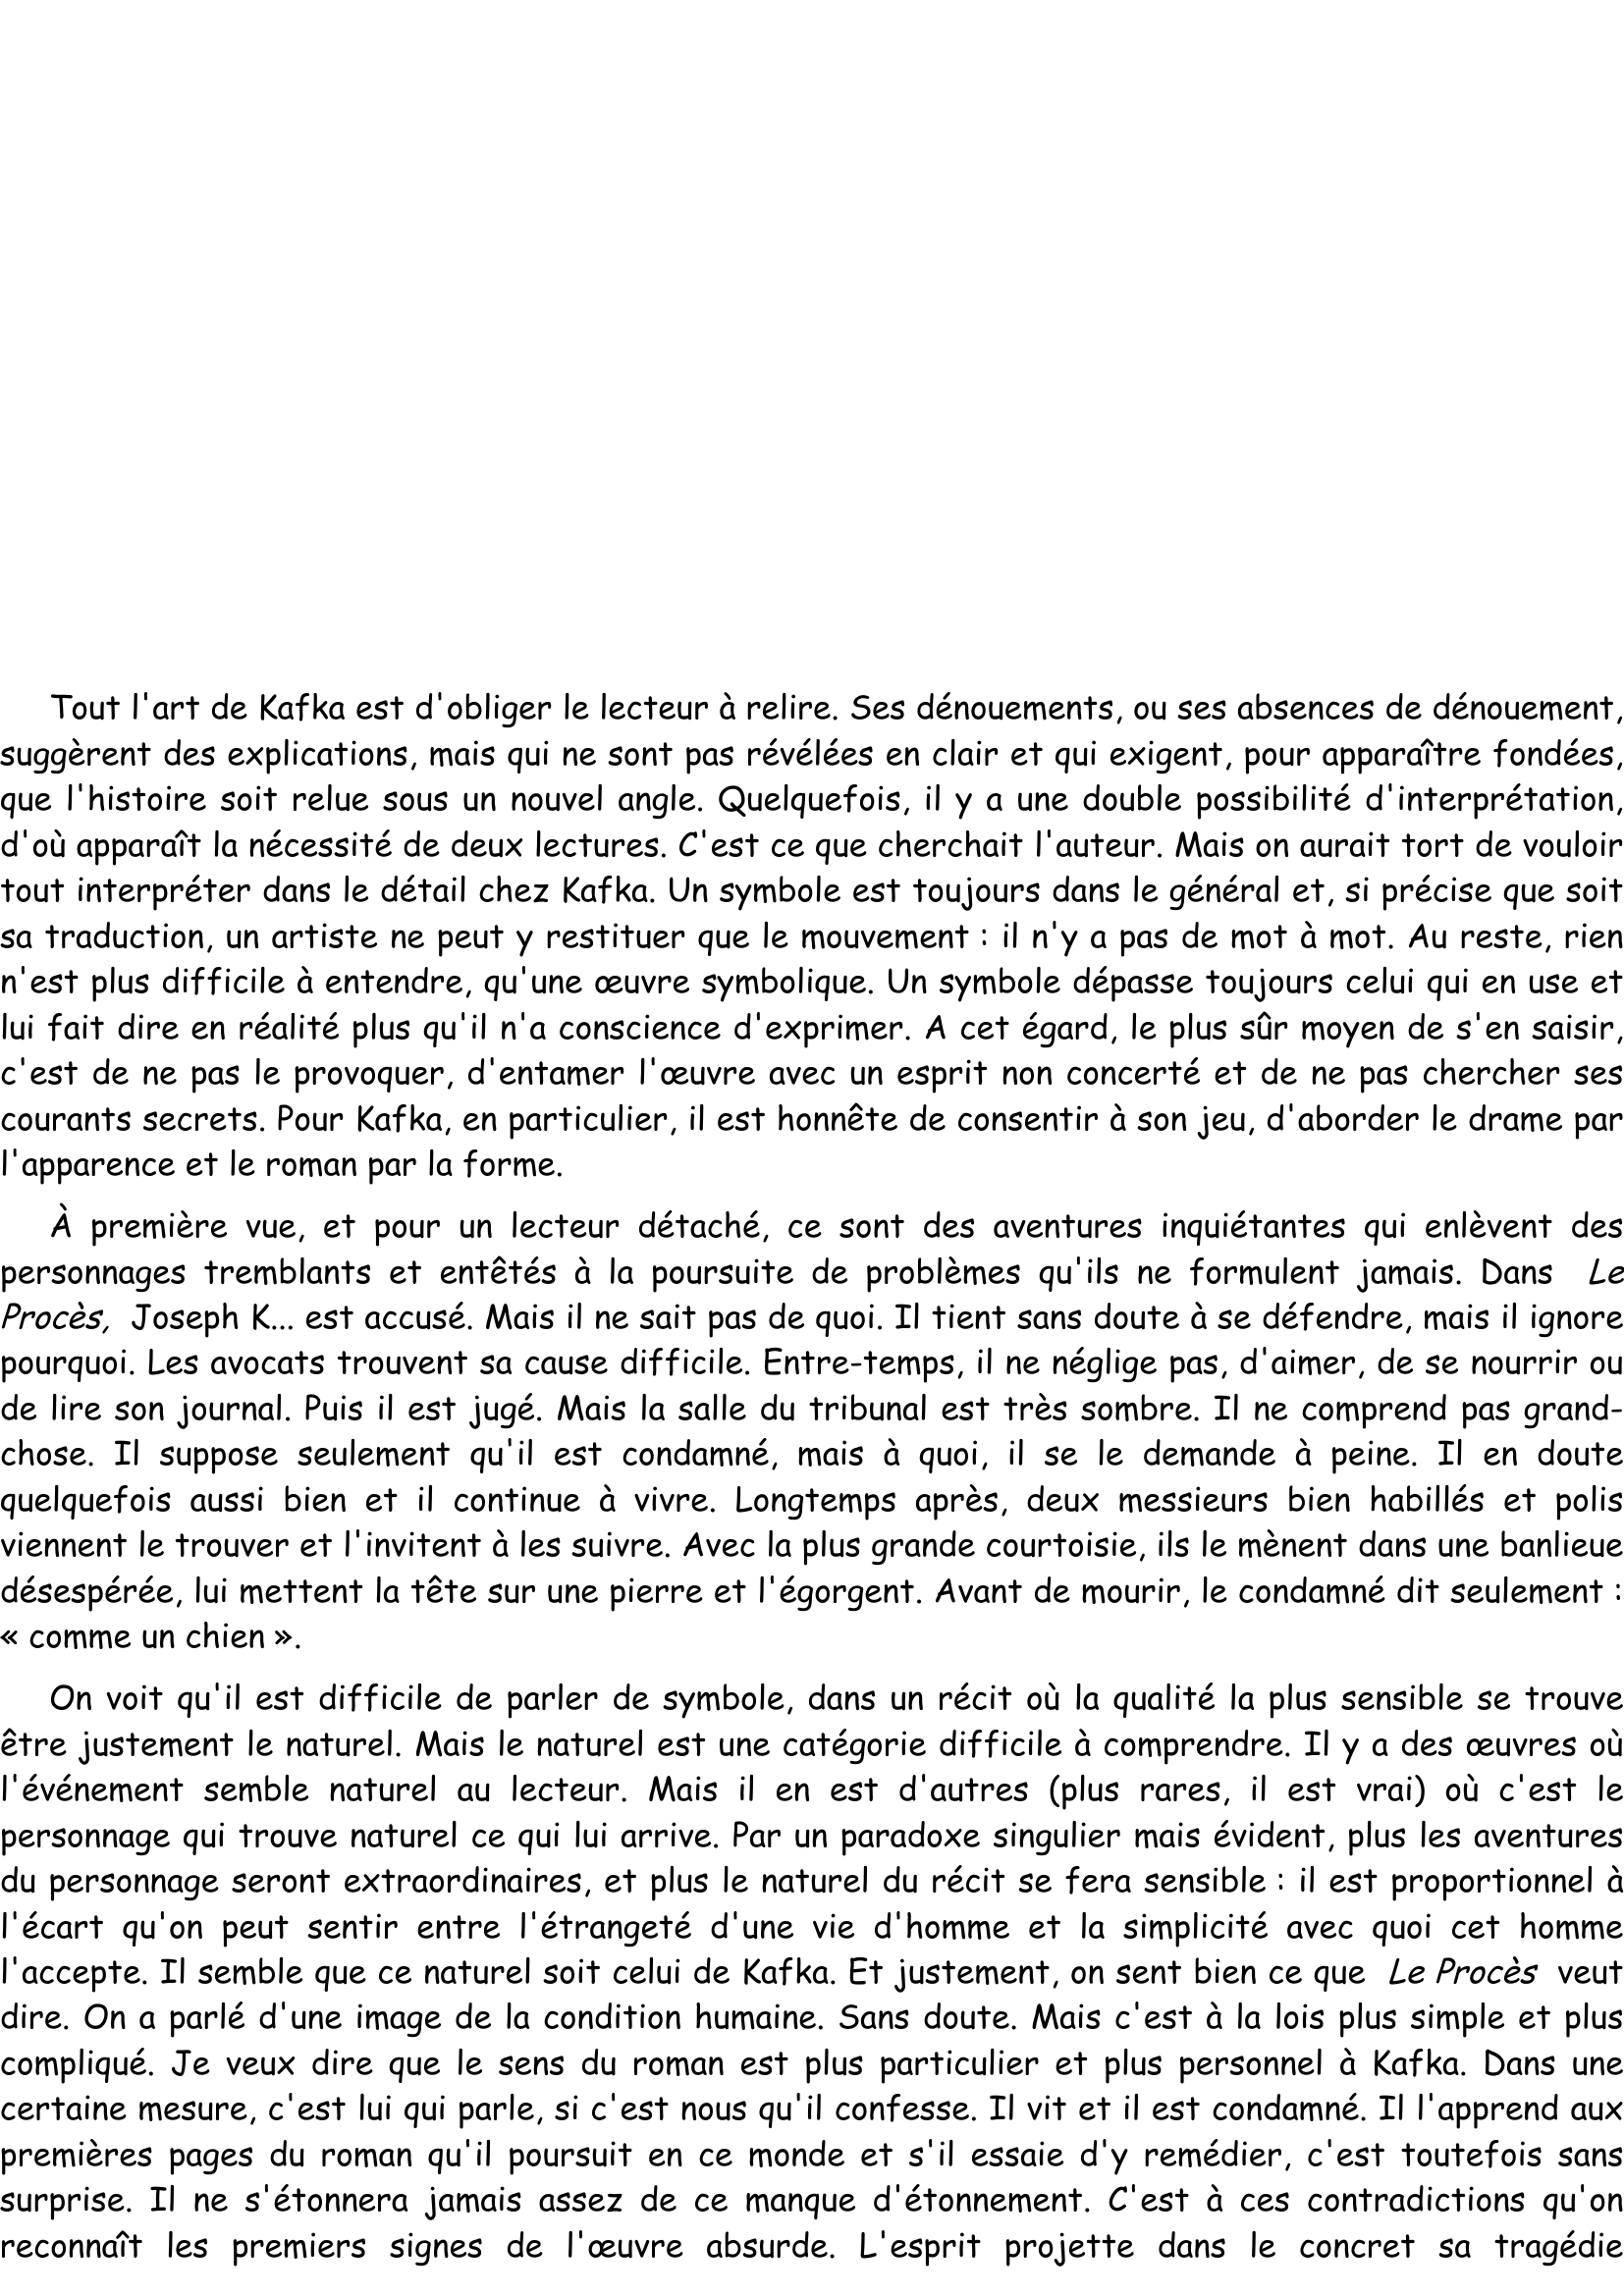 Prévisualisation du document  
 
Le mythe de Sisyphe.